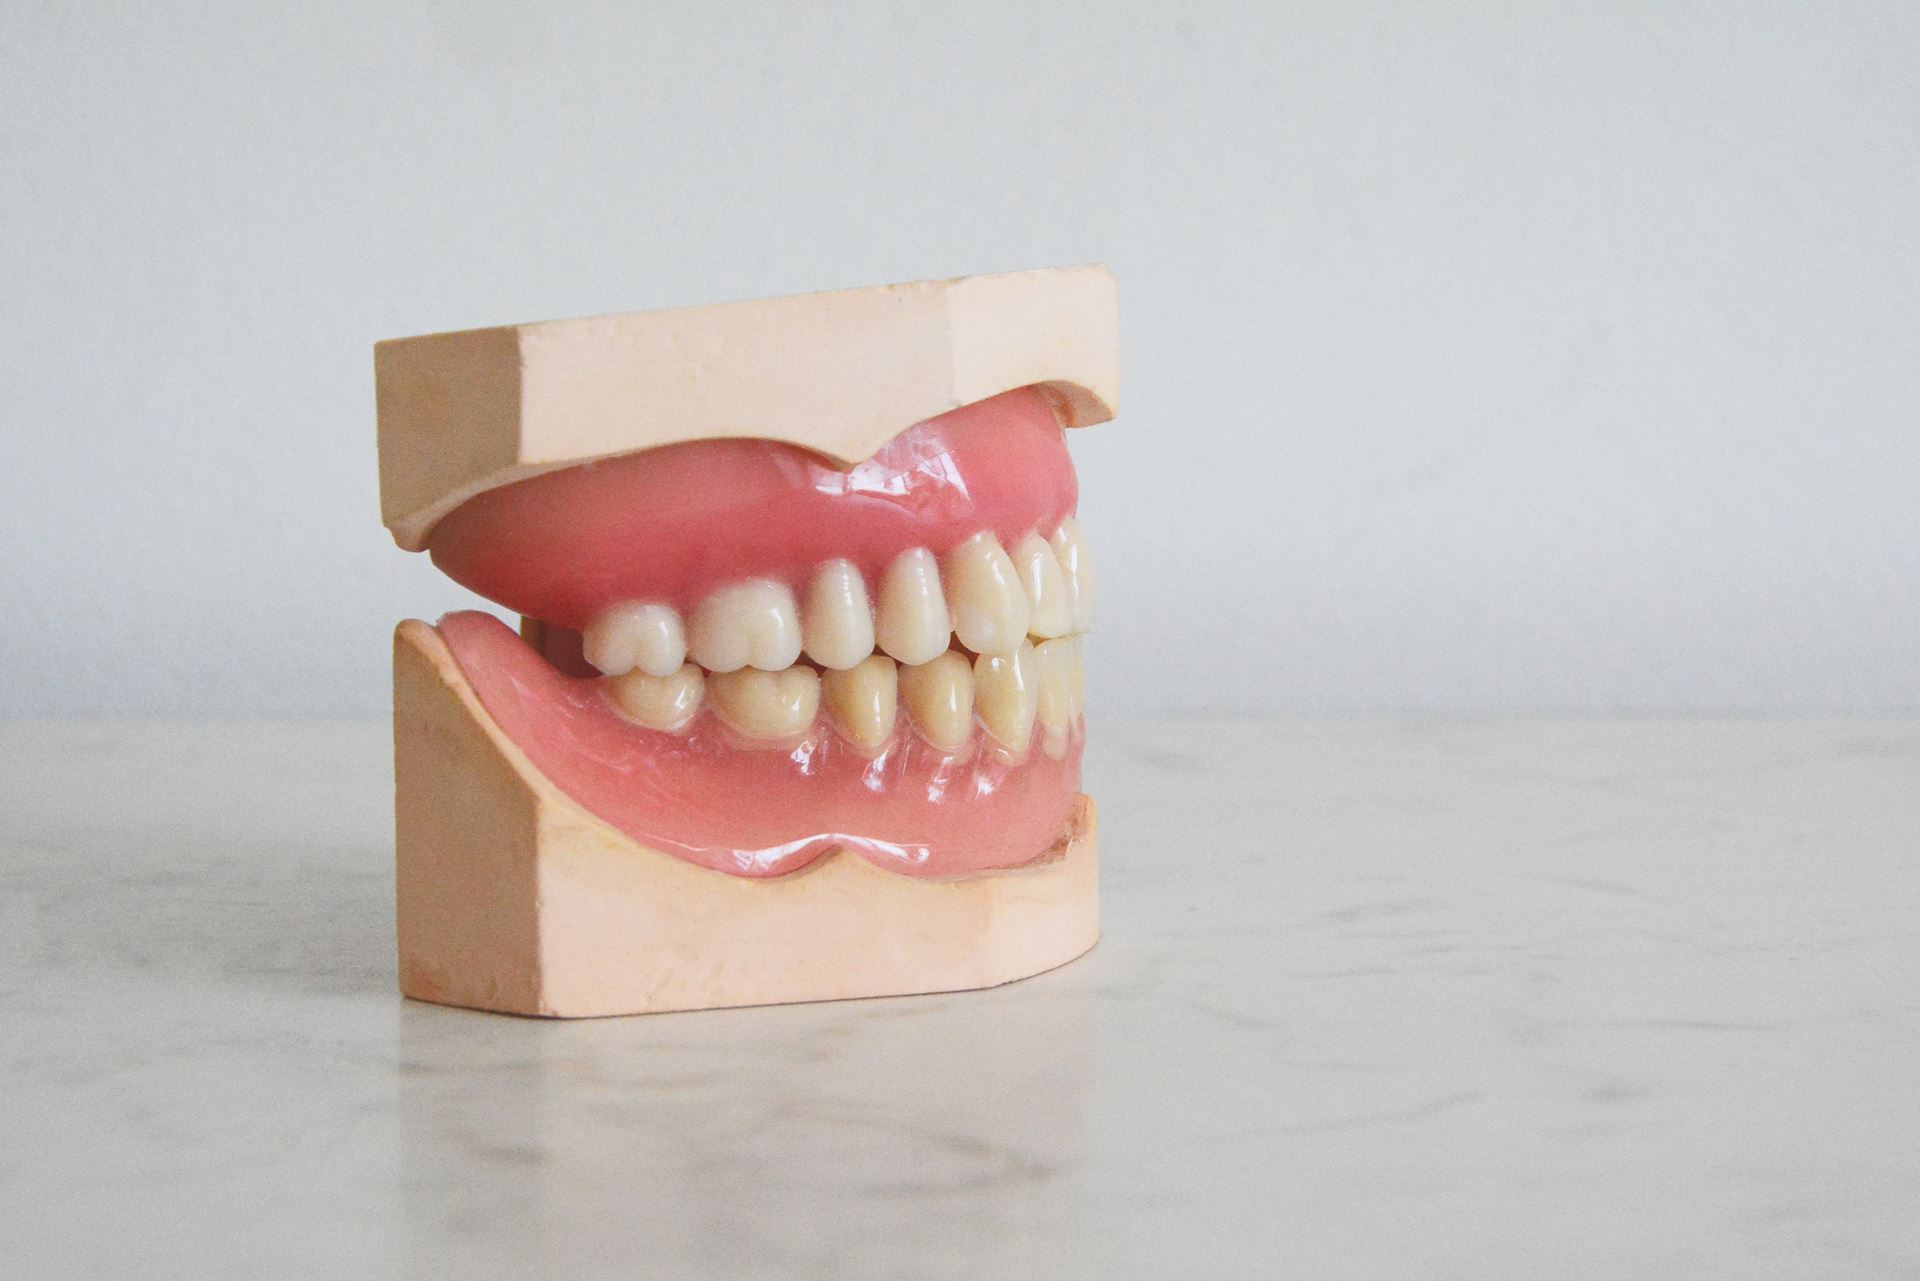 set of teeth